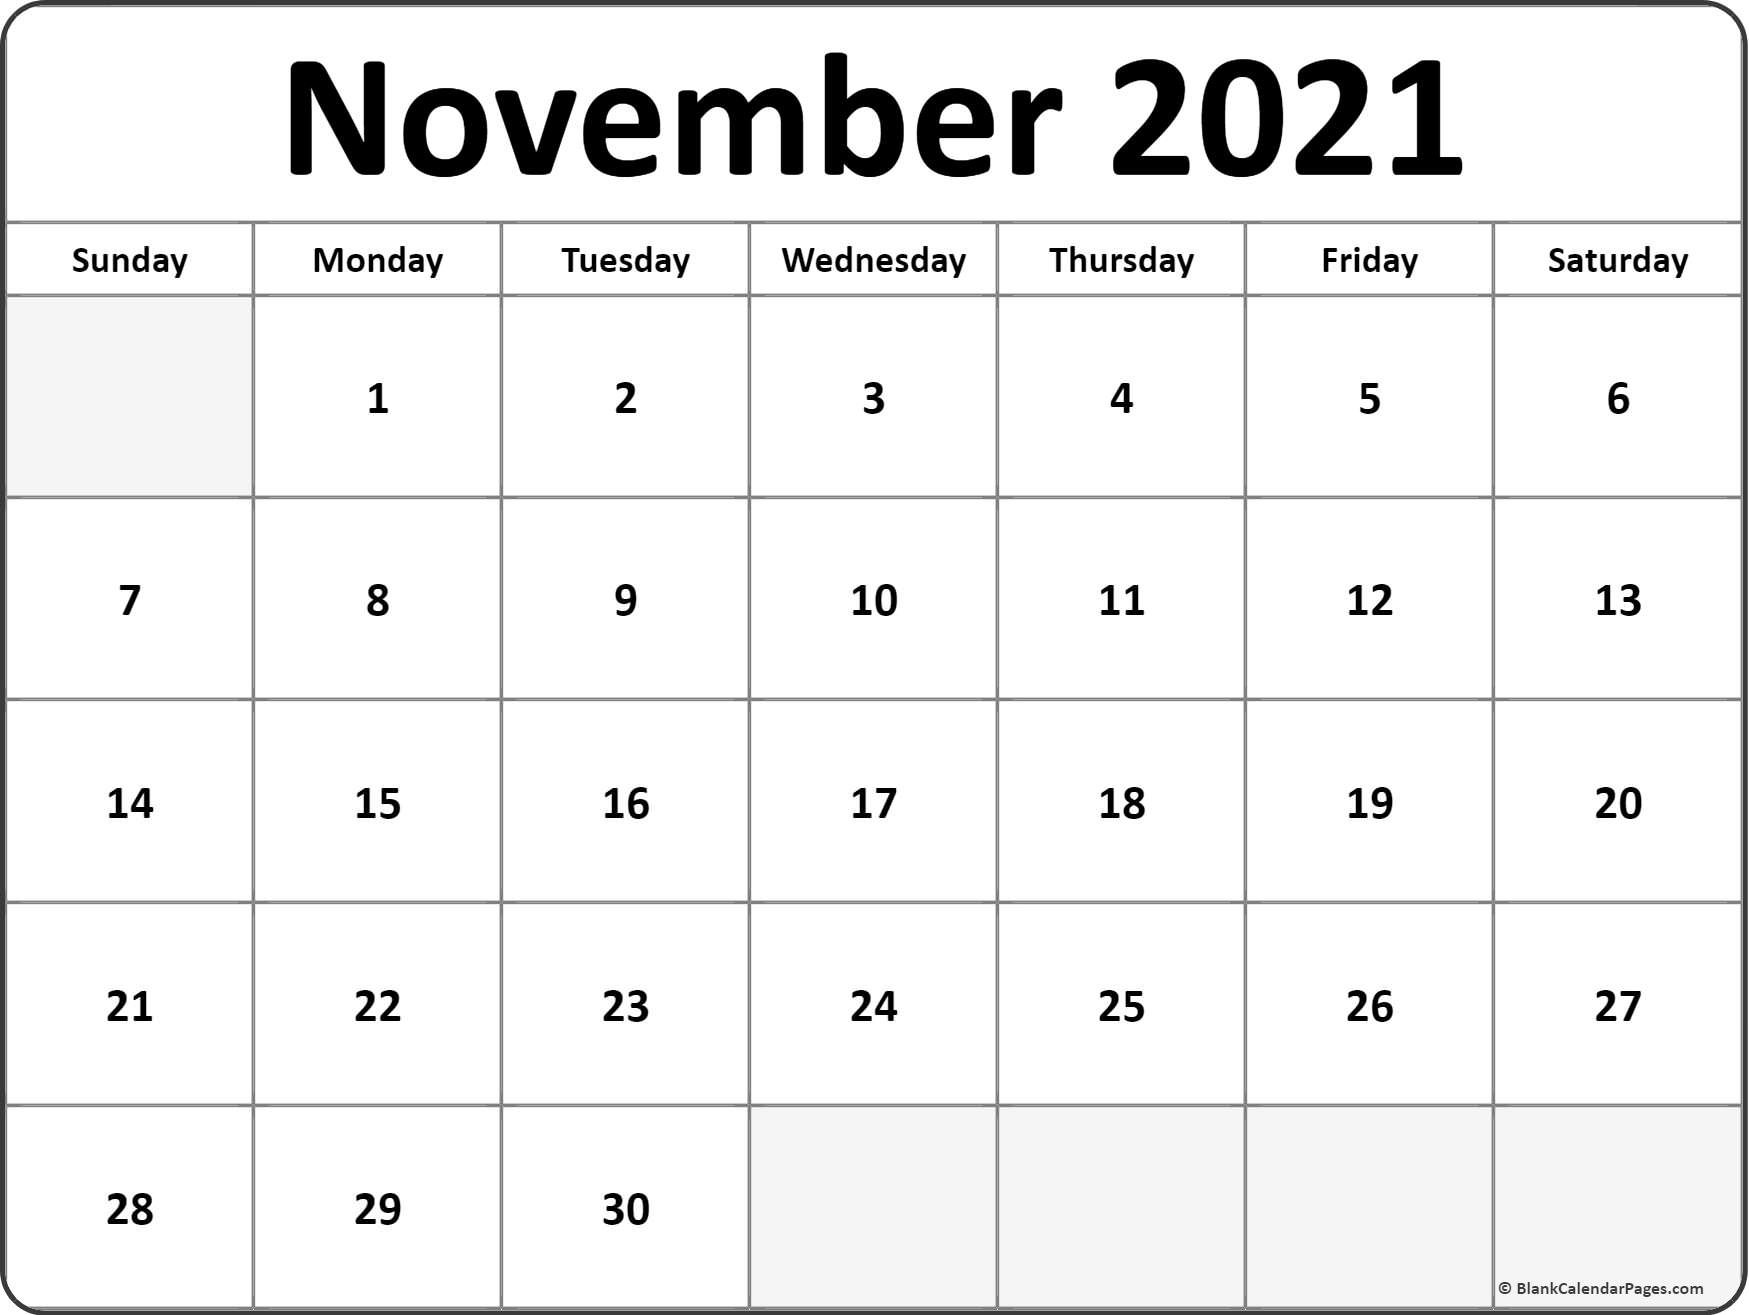 November 2021 Blank Calendar Templates.